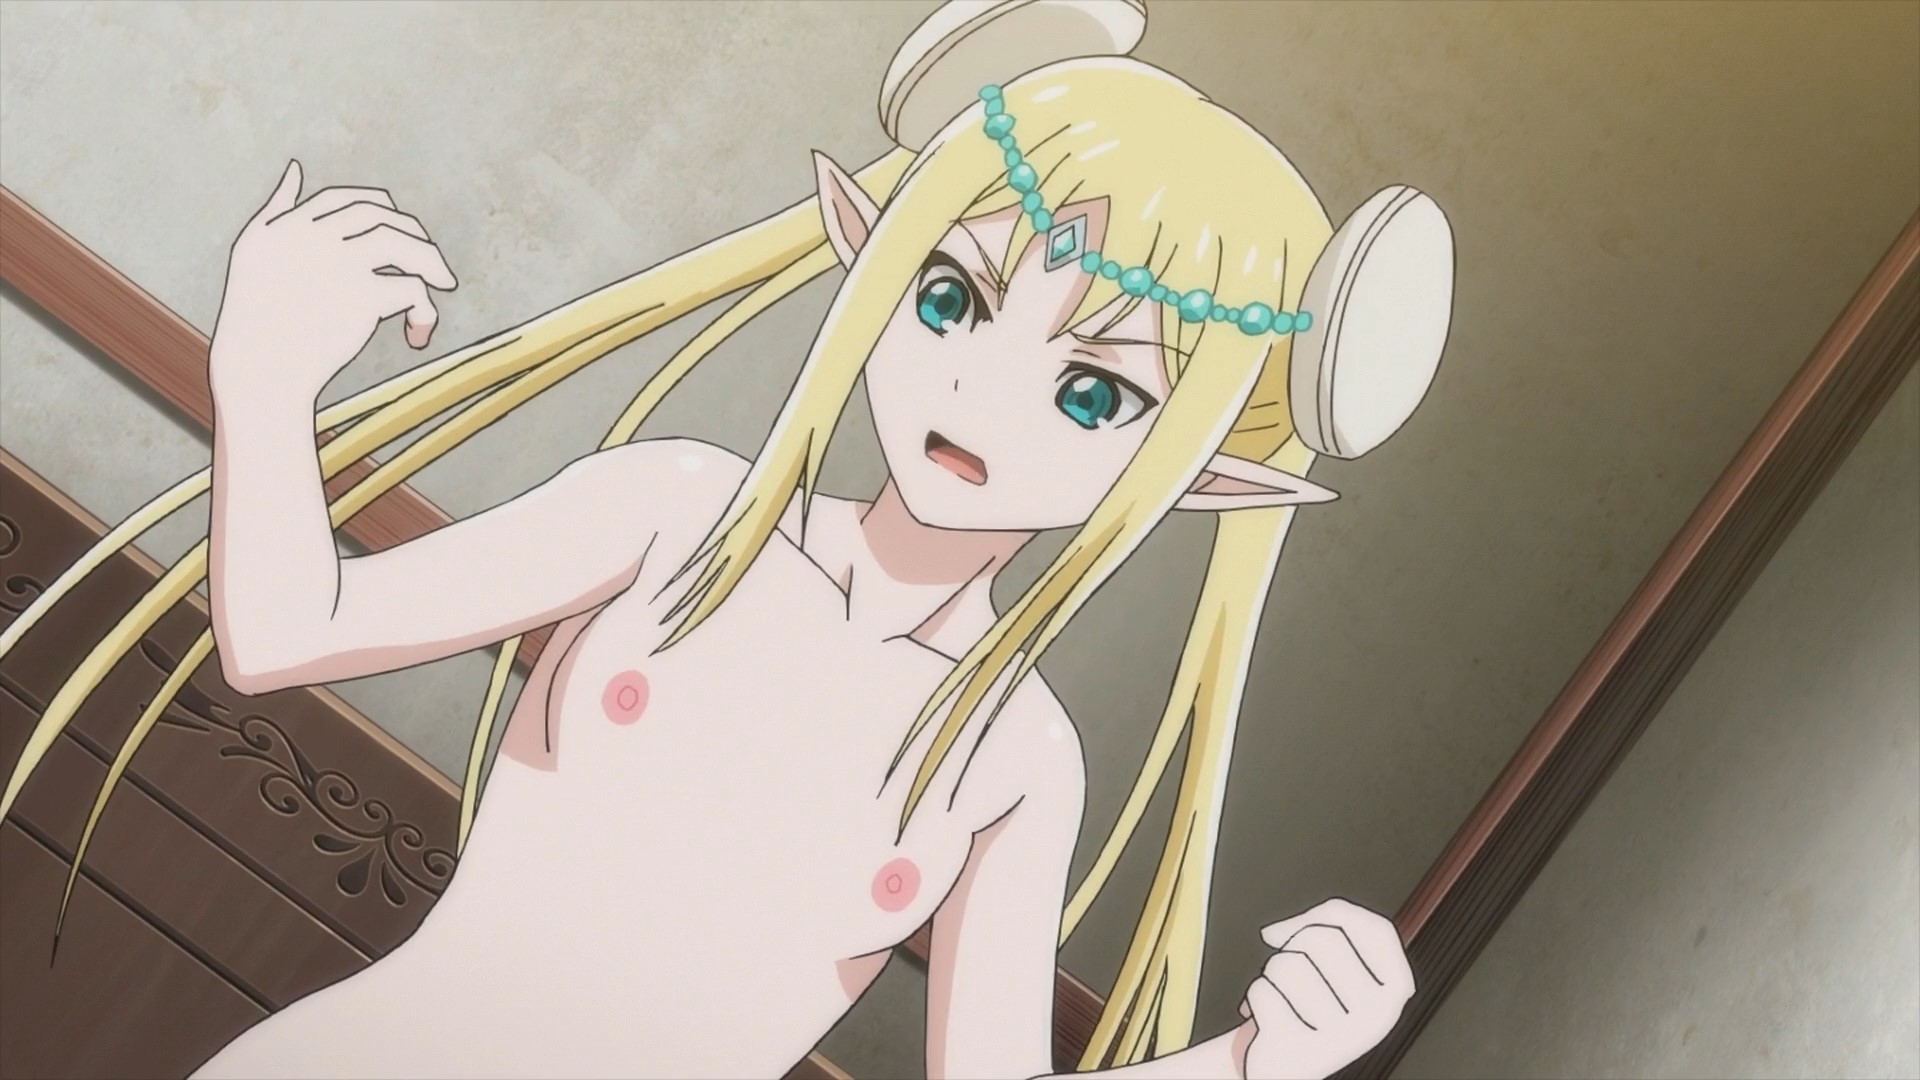 Ecchi anime with nudity